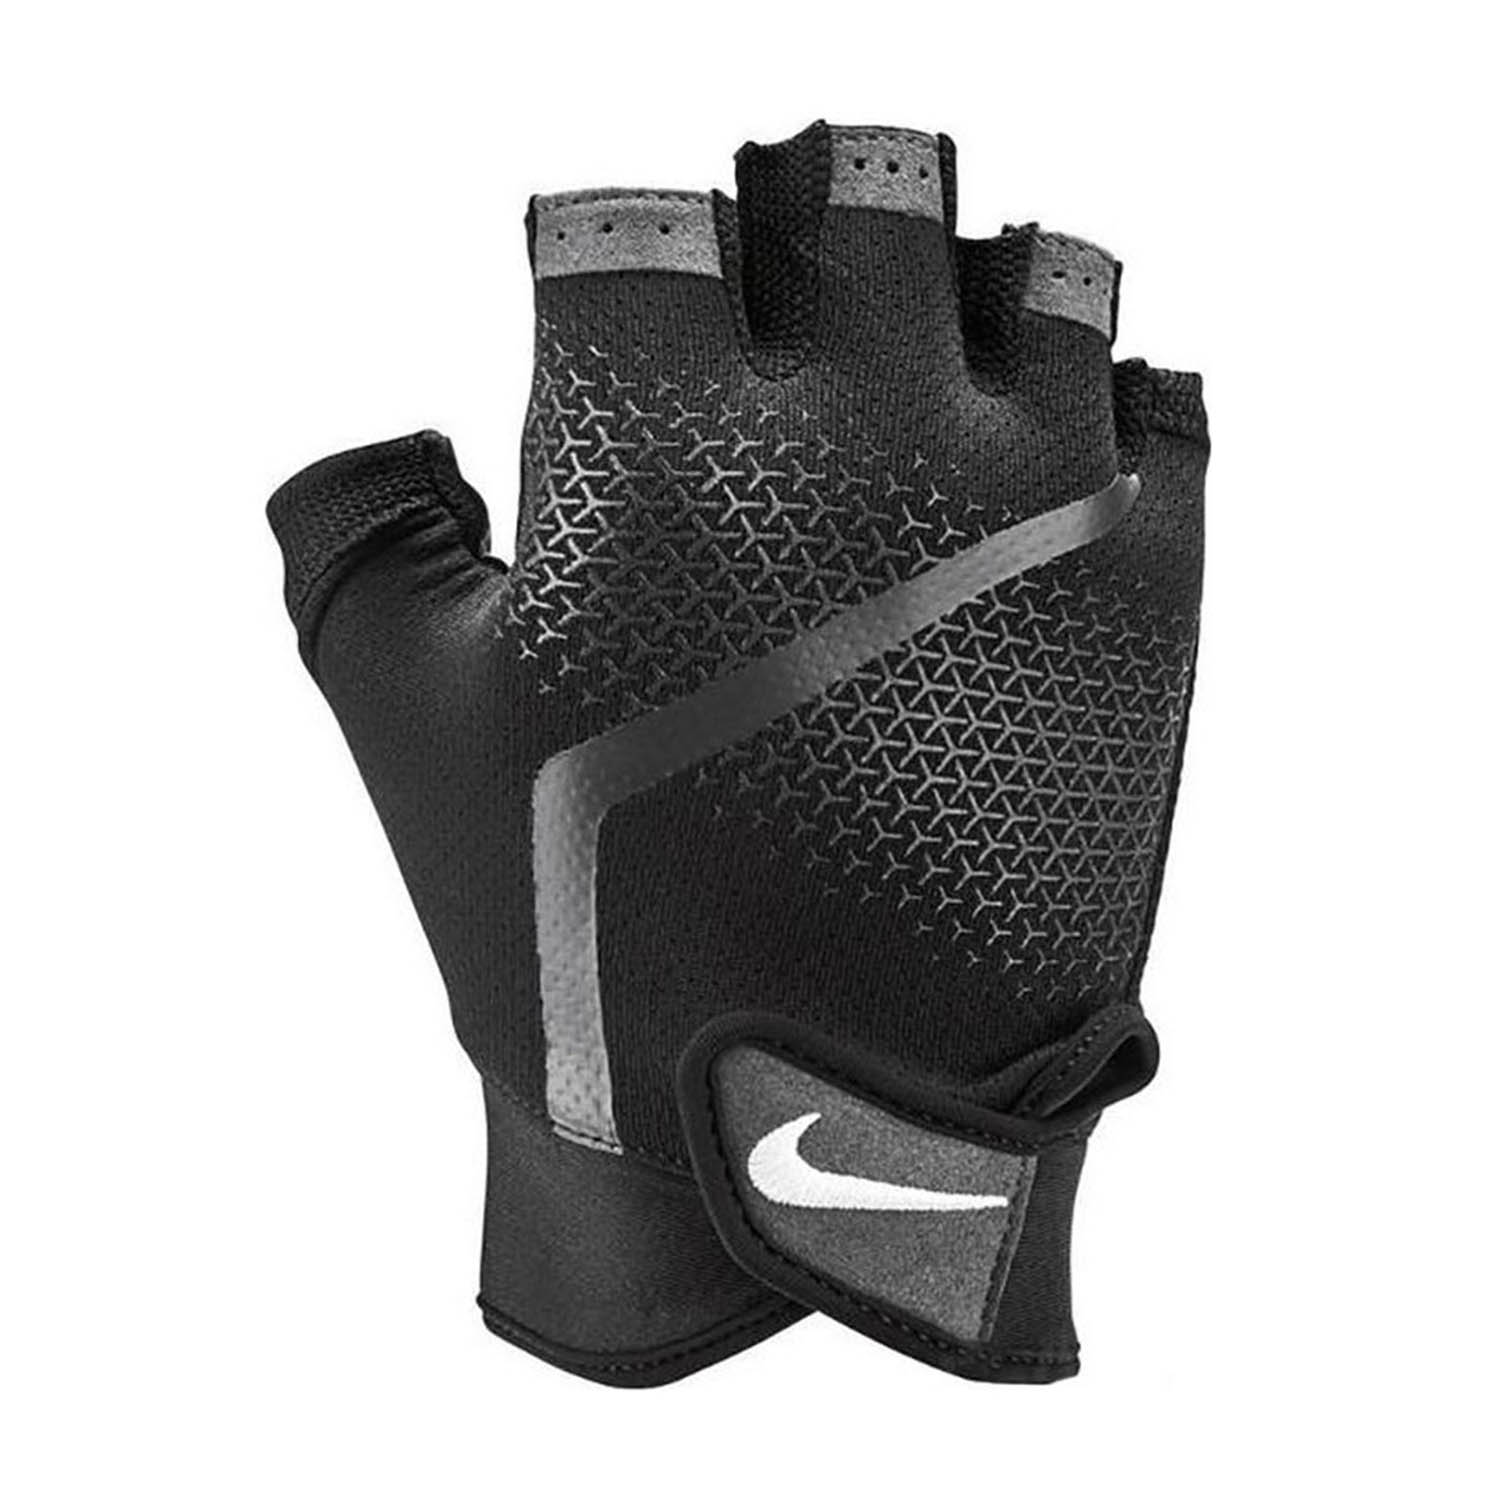 Nike Extreme Men's Fitness Gloves - Black/Anthracite